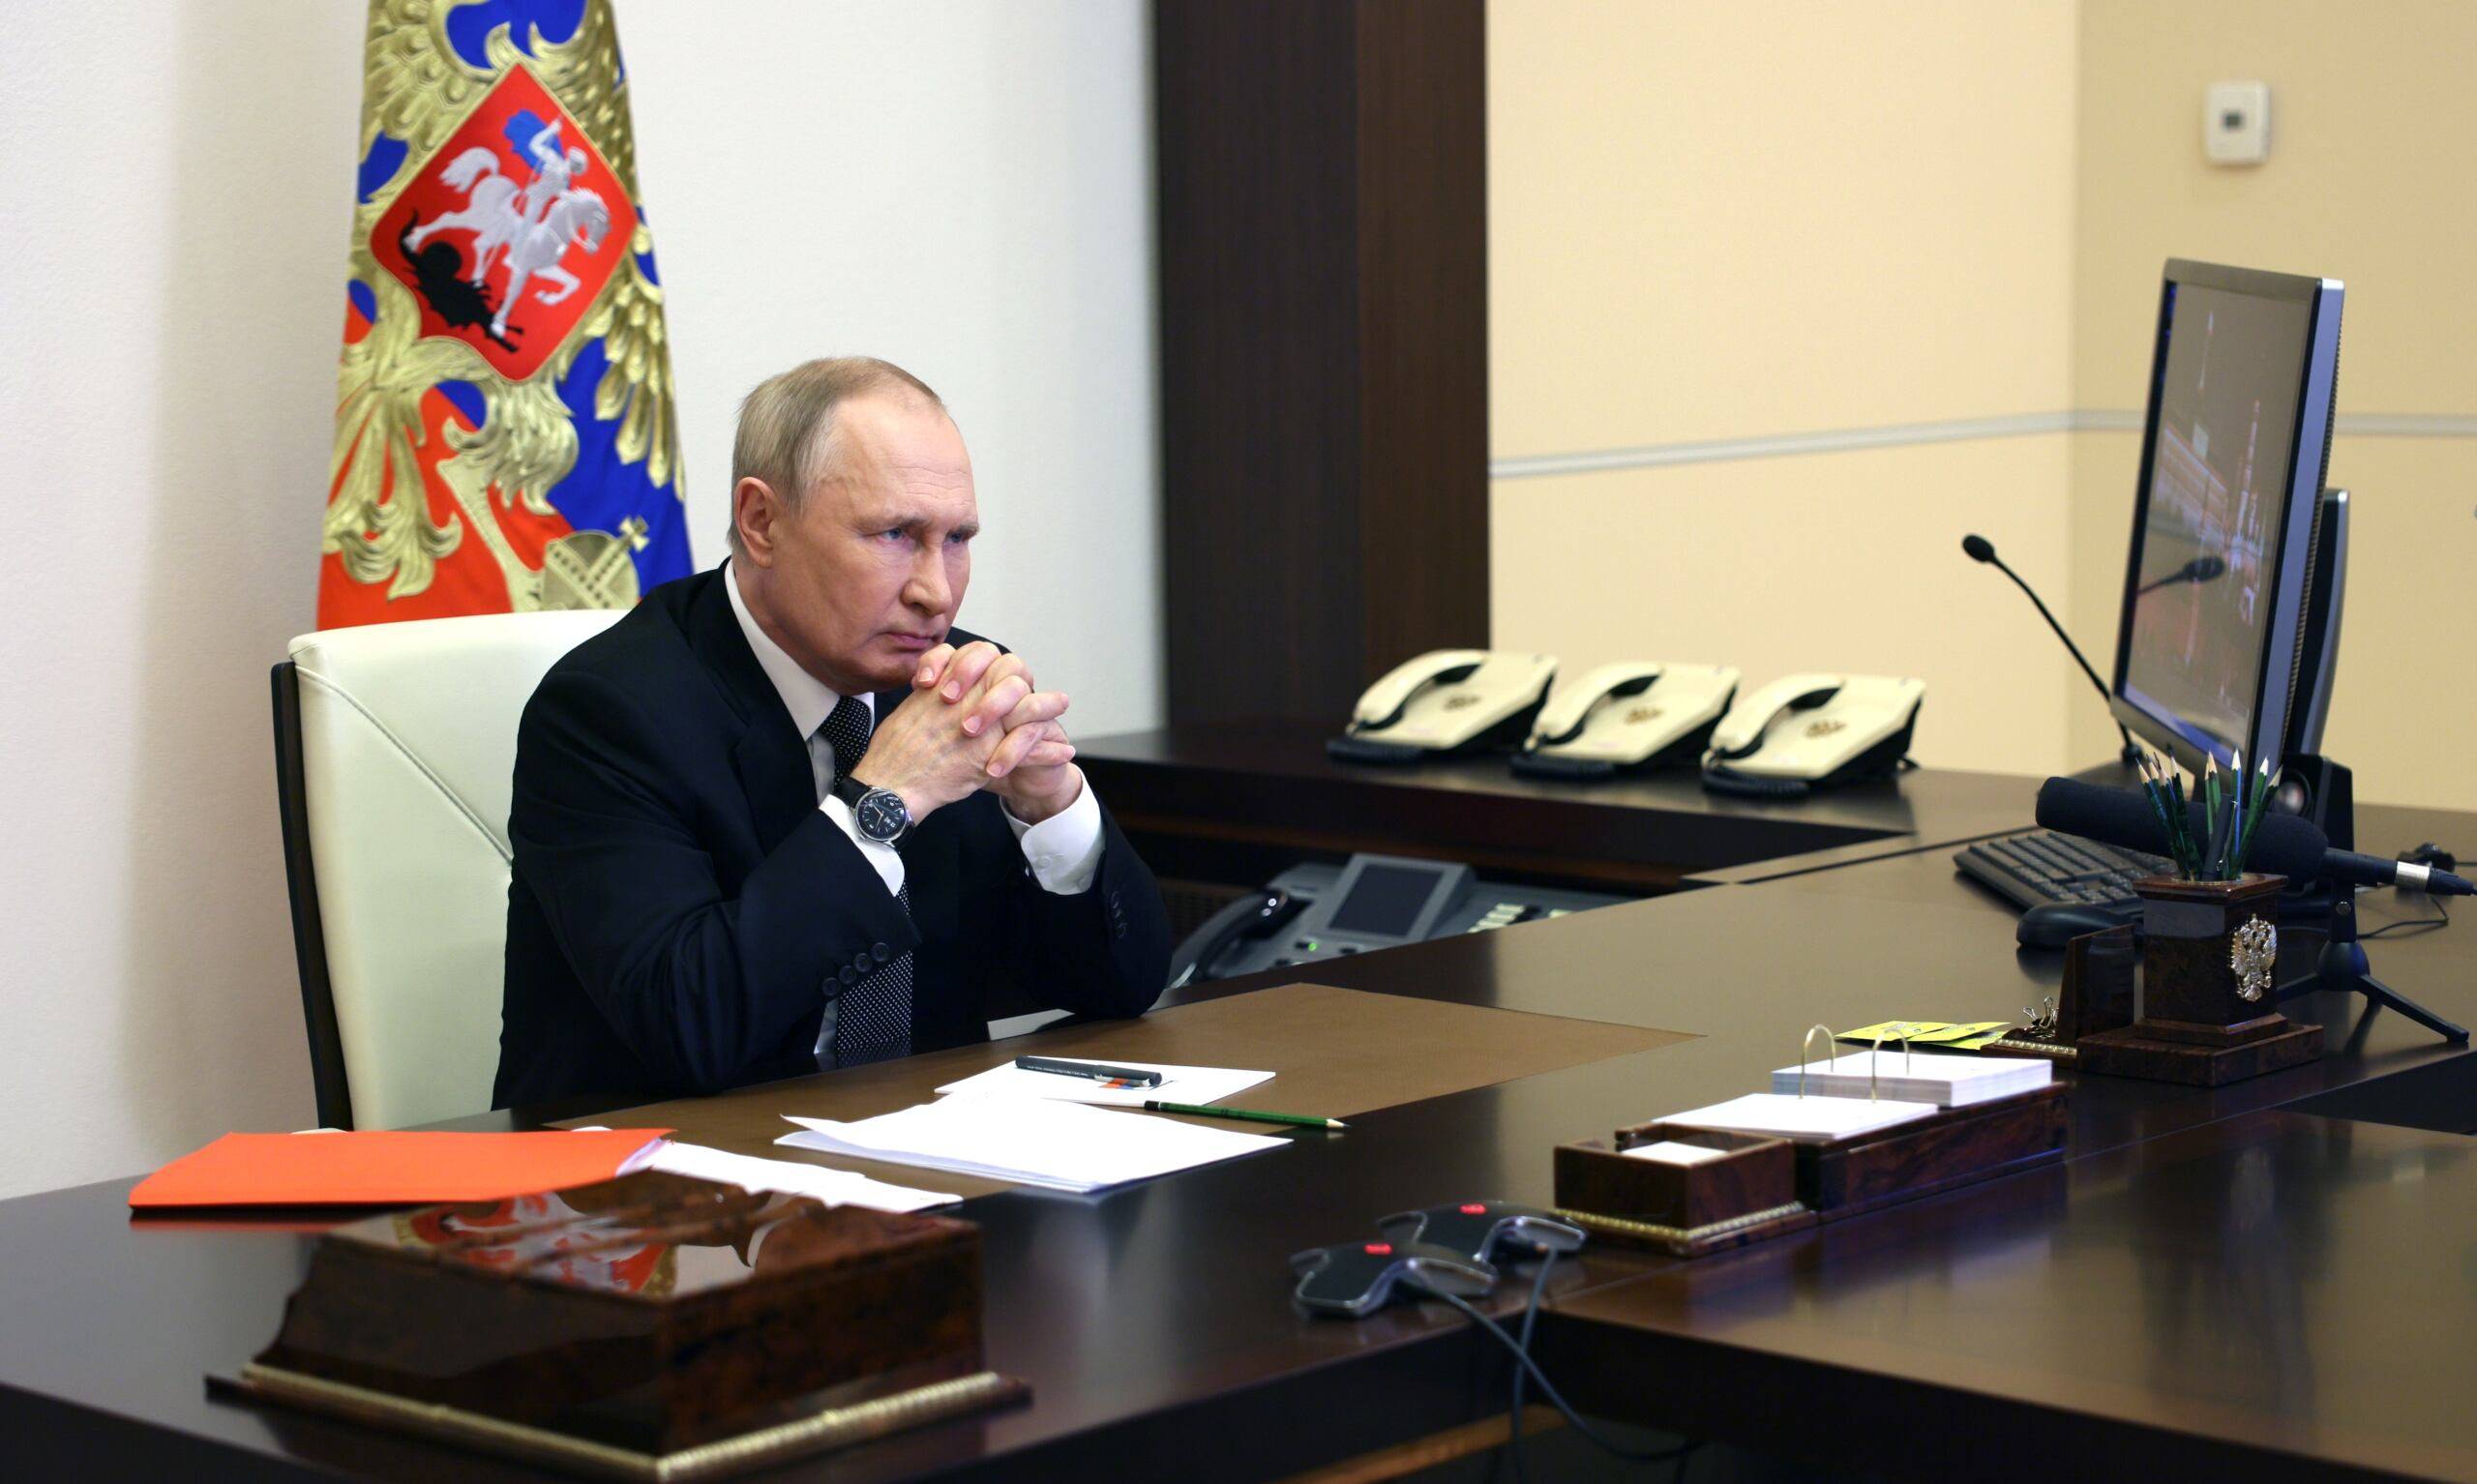 Władimir Putin siedzi za biurkiem, opiera o nie łokcie, dłonie ma splecione, wokół niego cztery aparaty telefoniczne